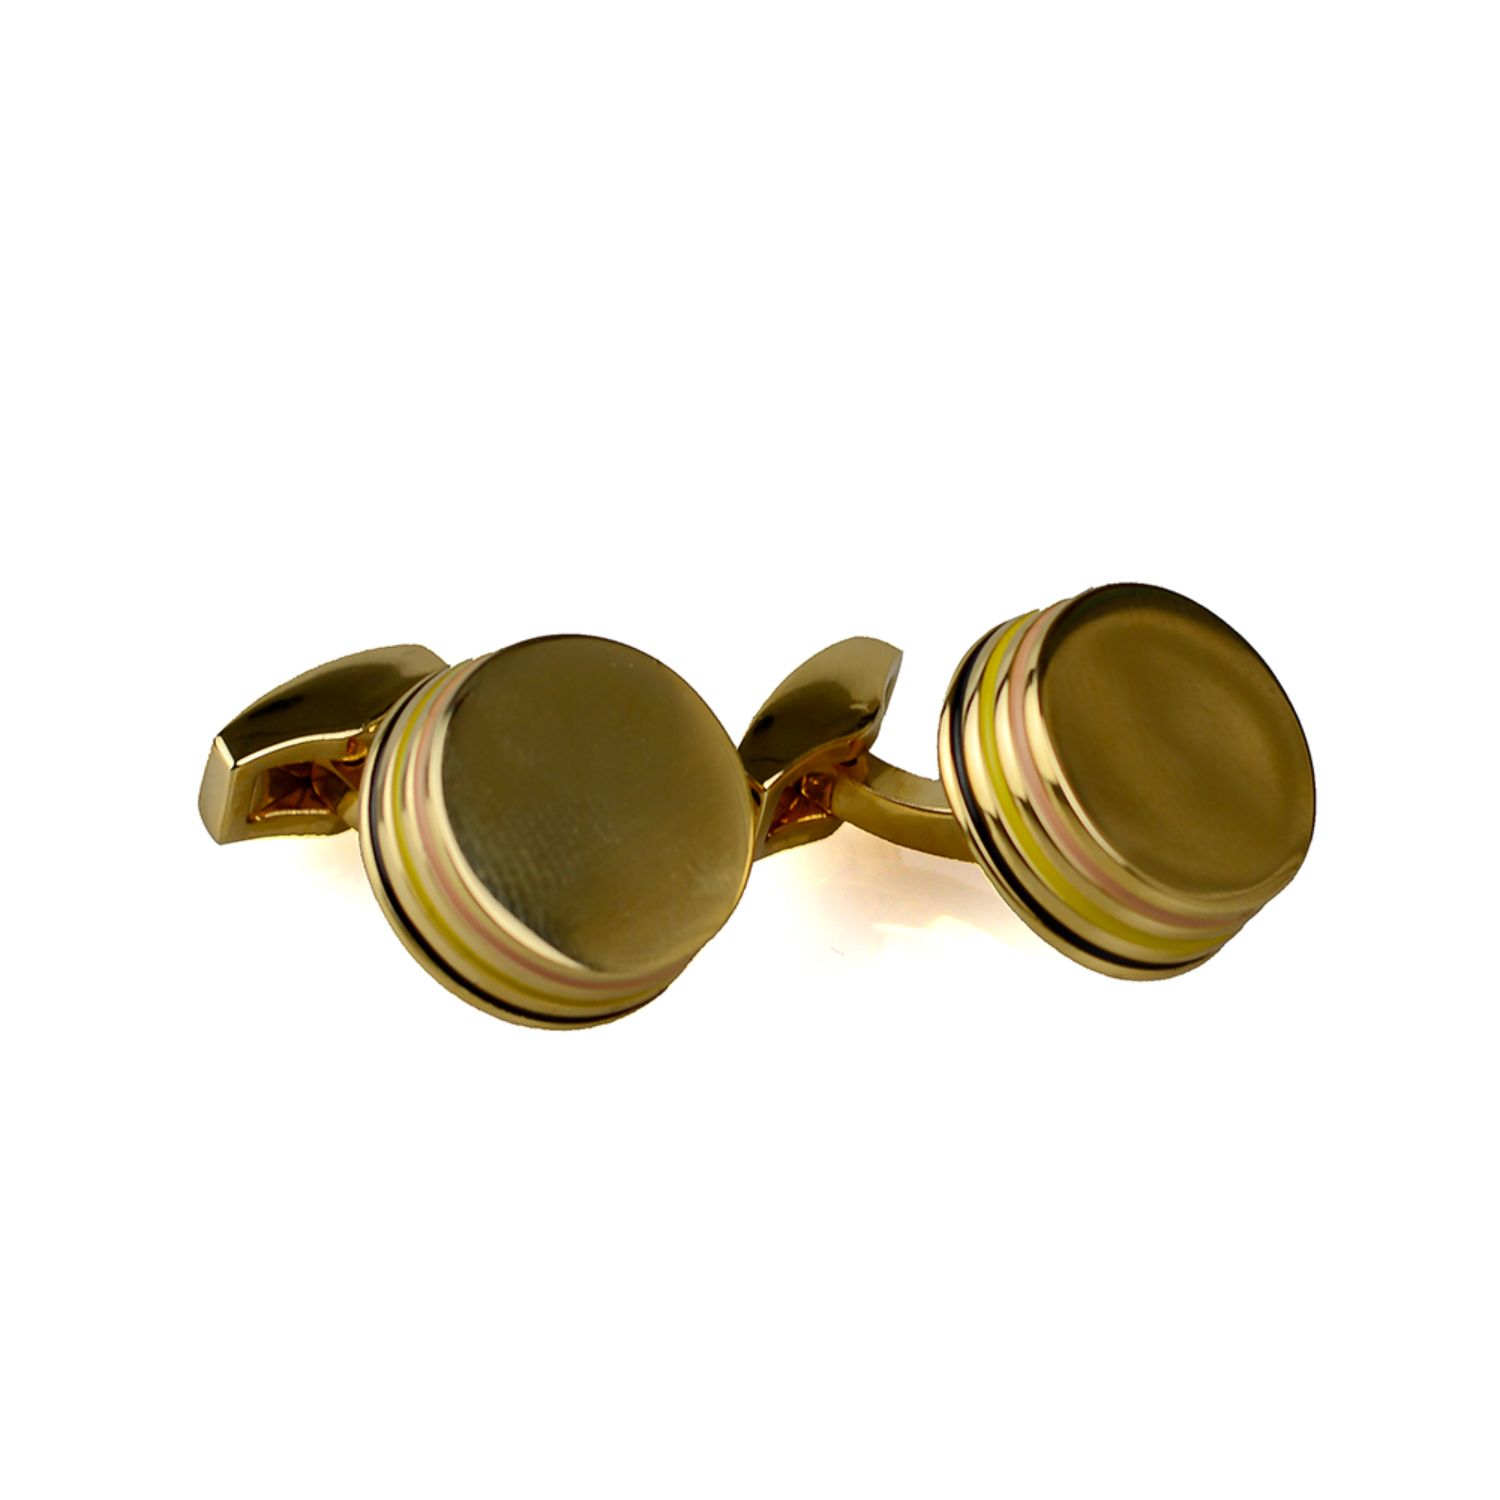 David Wej Men's Round Metal Cufflinks – Gold